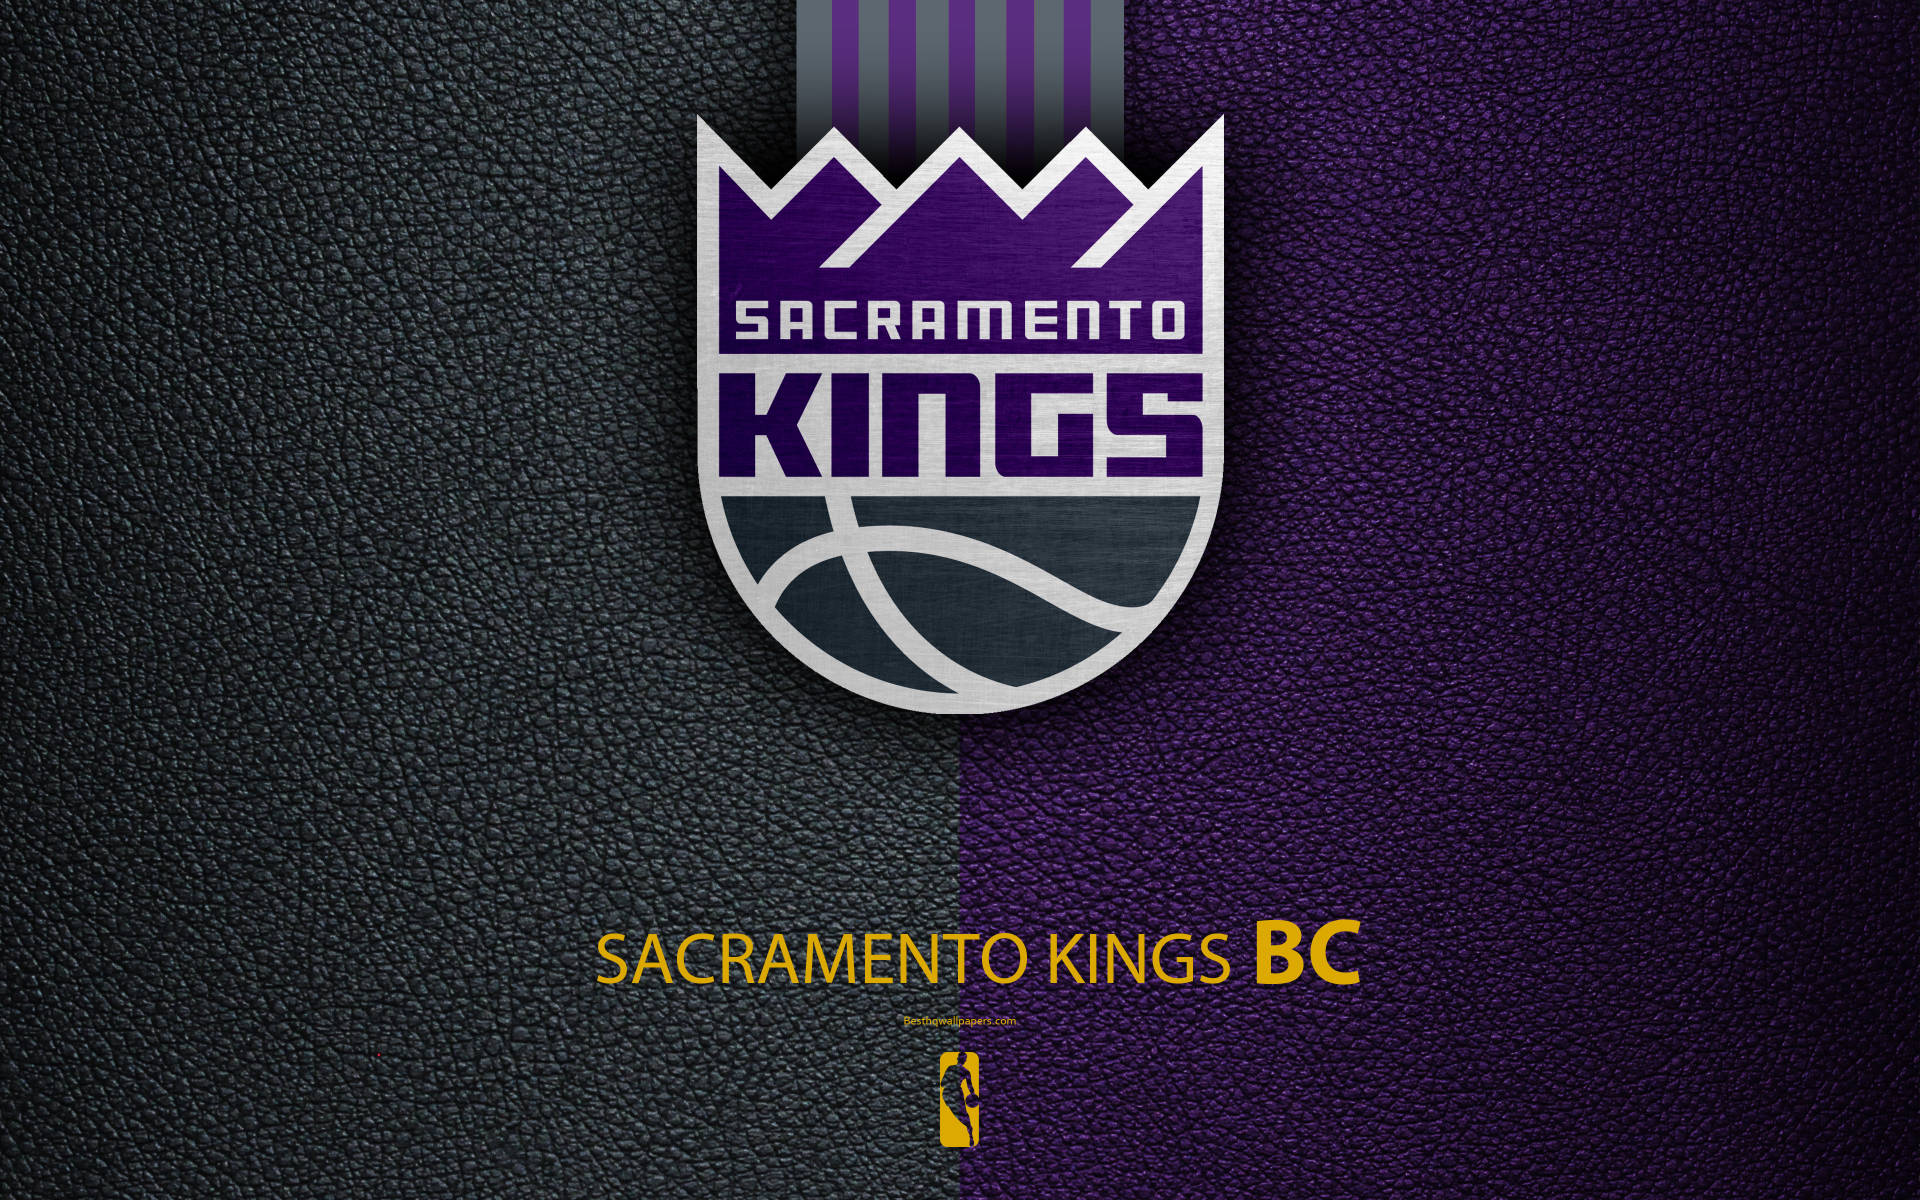 Sacramento Kings Logo On Leather Texture Wallpaper